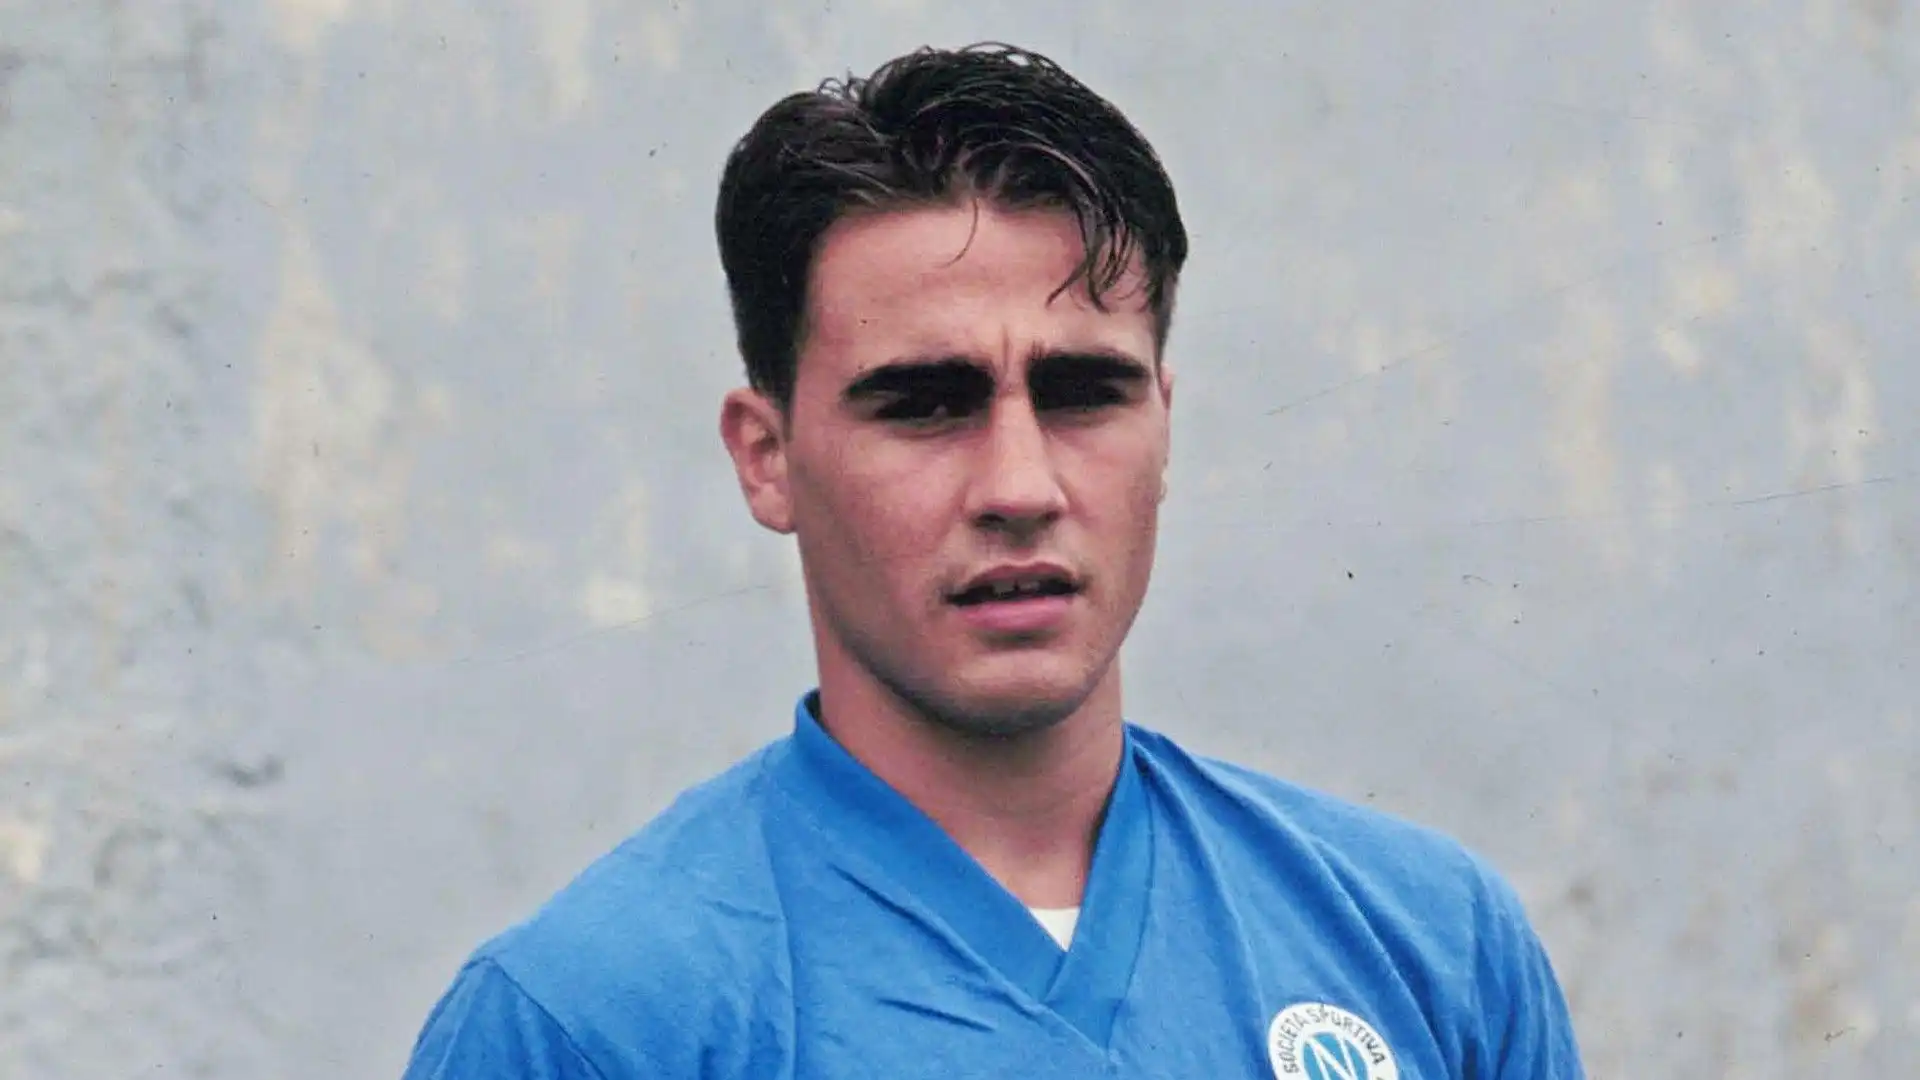 Fabio Cannavaro - ha giocato nel Napoli quando era molto giovane e prima di consacrarsi come uno dei difensori più forti della storia del calcio. Resta però tra i migliori ad aver indossato la maglia azzurra